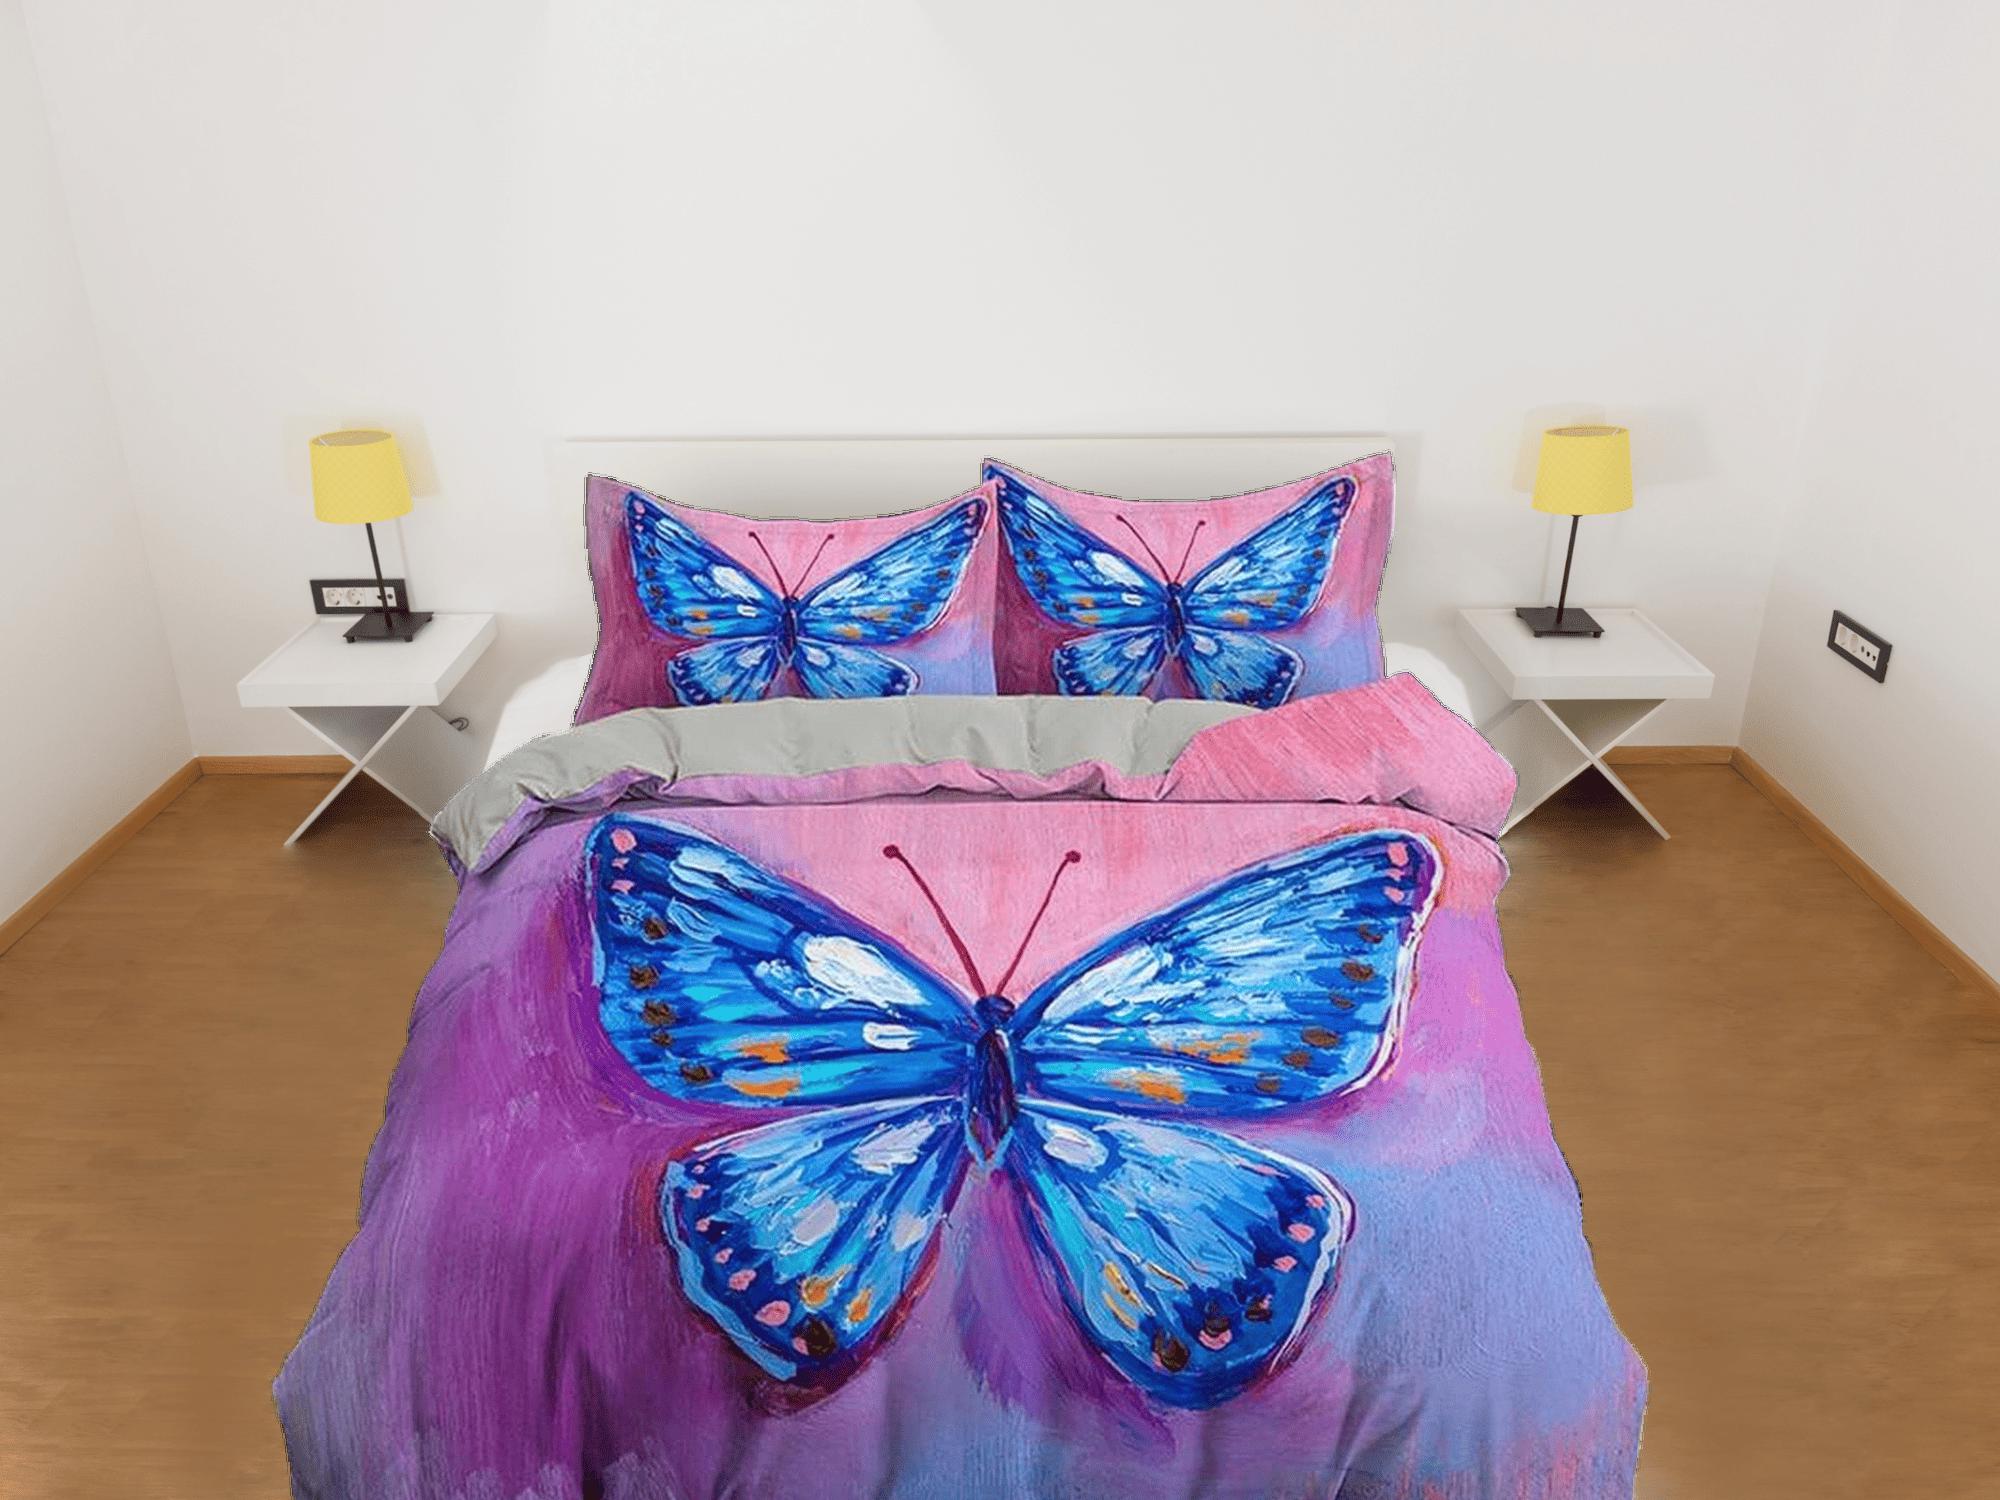 daintyduvet Artistic blue butterfly bedding boho chic aesthetic pink purple duvet cover, dorm bedding full size duvet king queen twin, nursery toddler